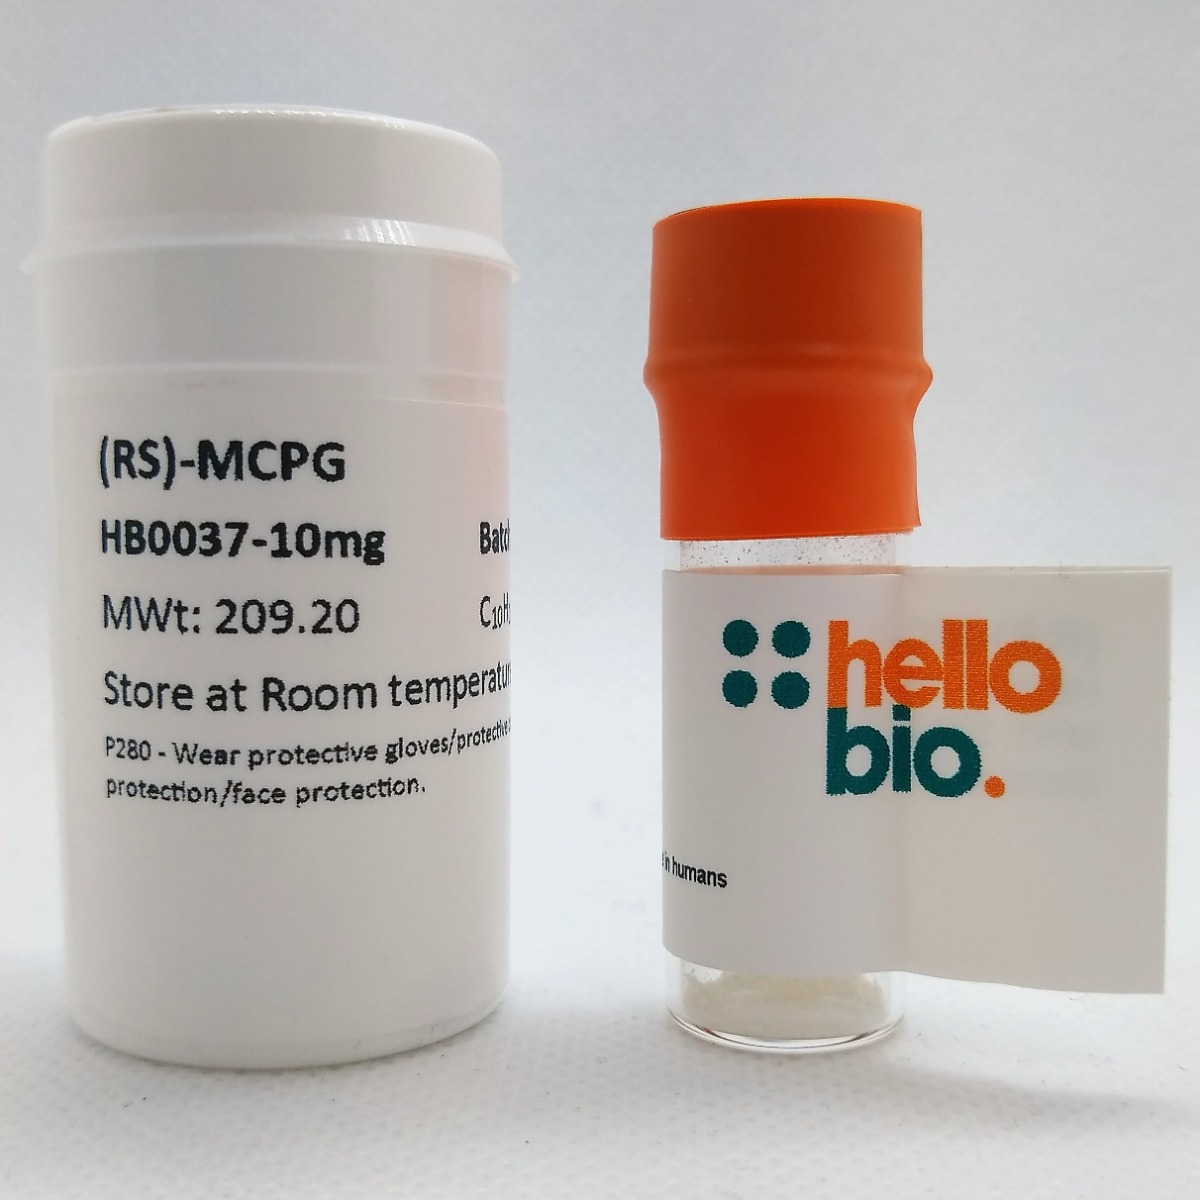 (RS)-MCPG product vial image | Hello Bio